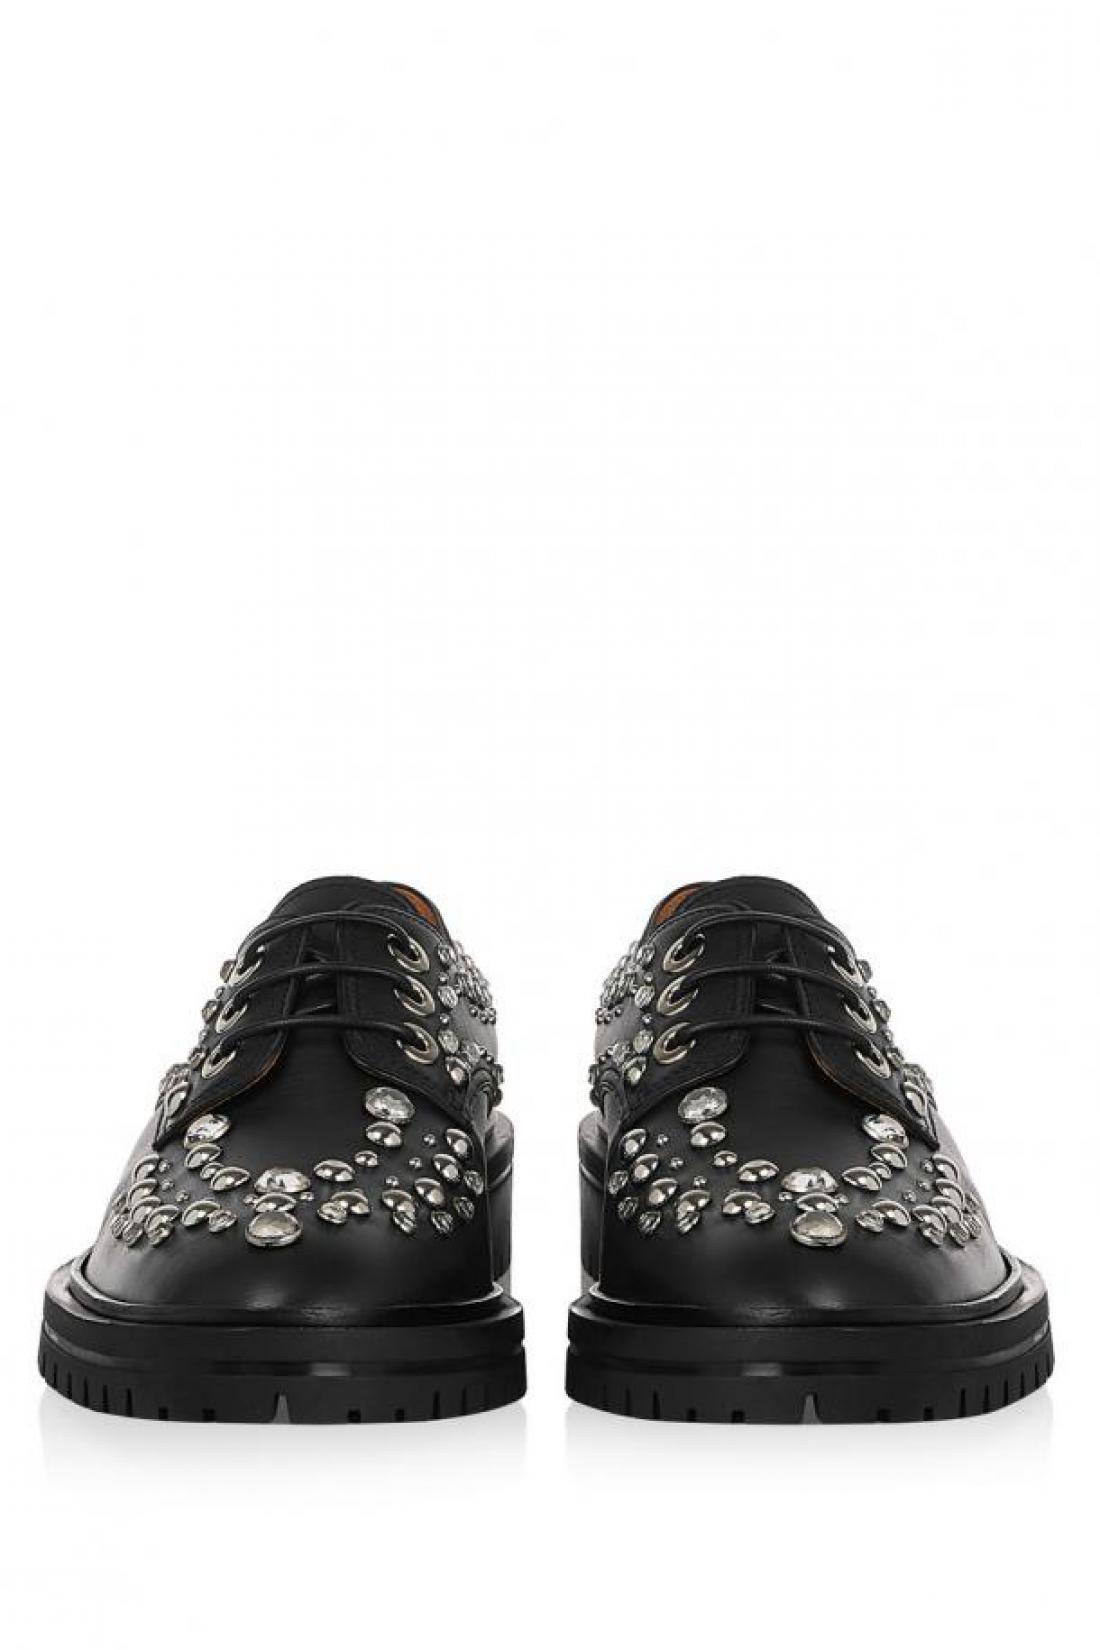 Klasični Givenchyjevi čevlji z neklasičnimi dodatki.